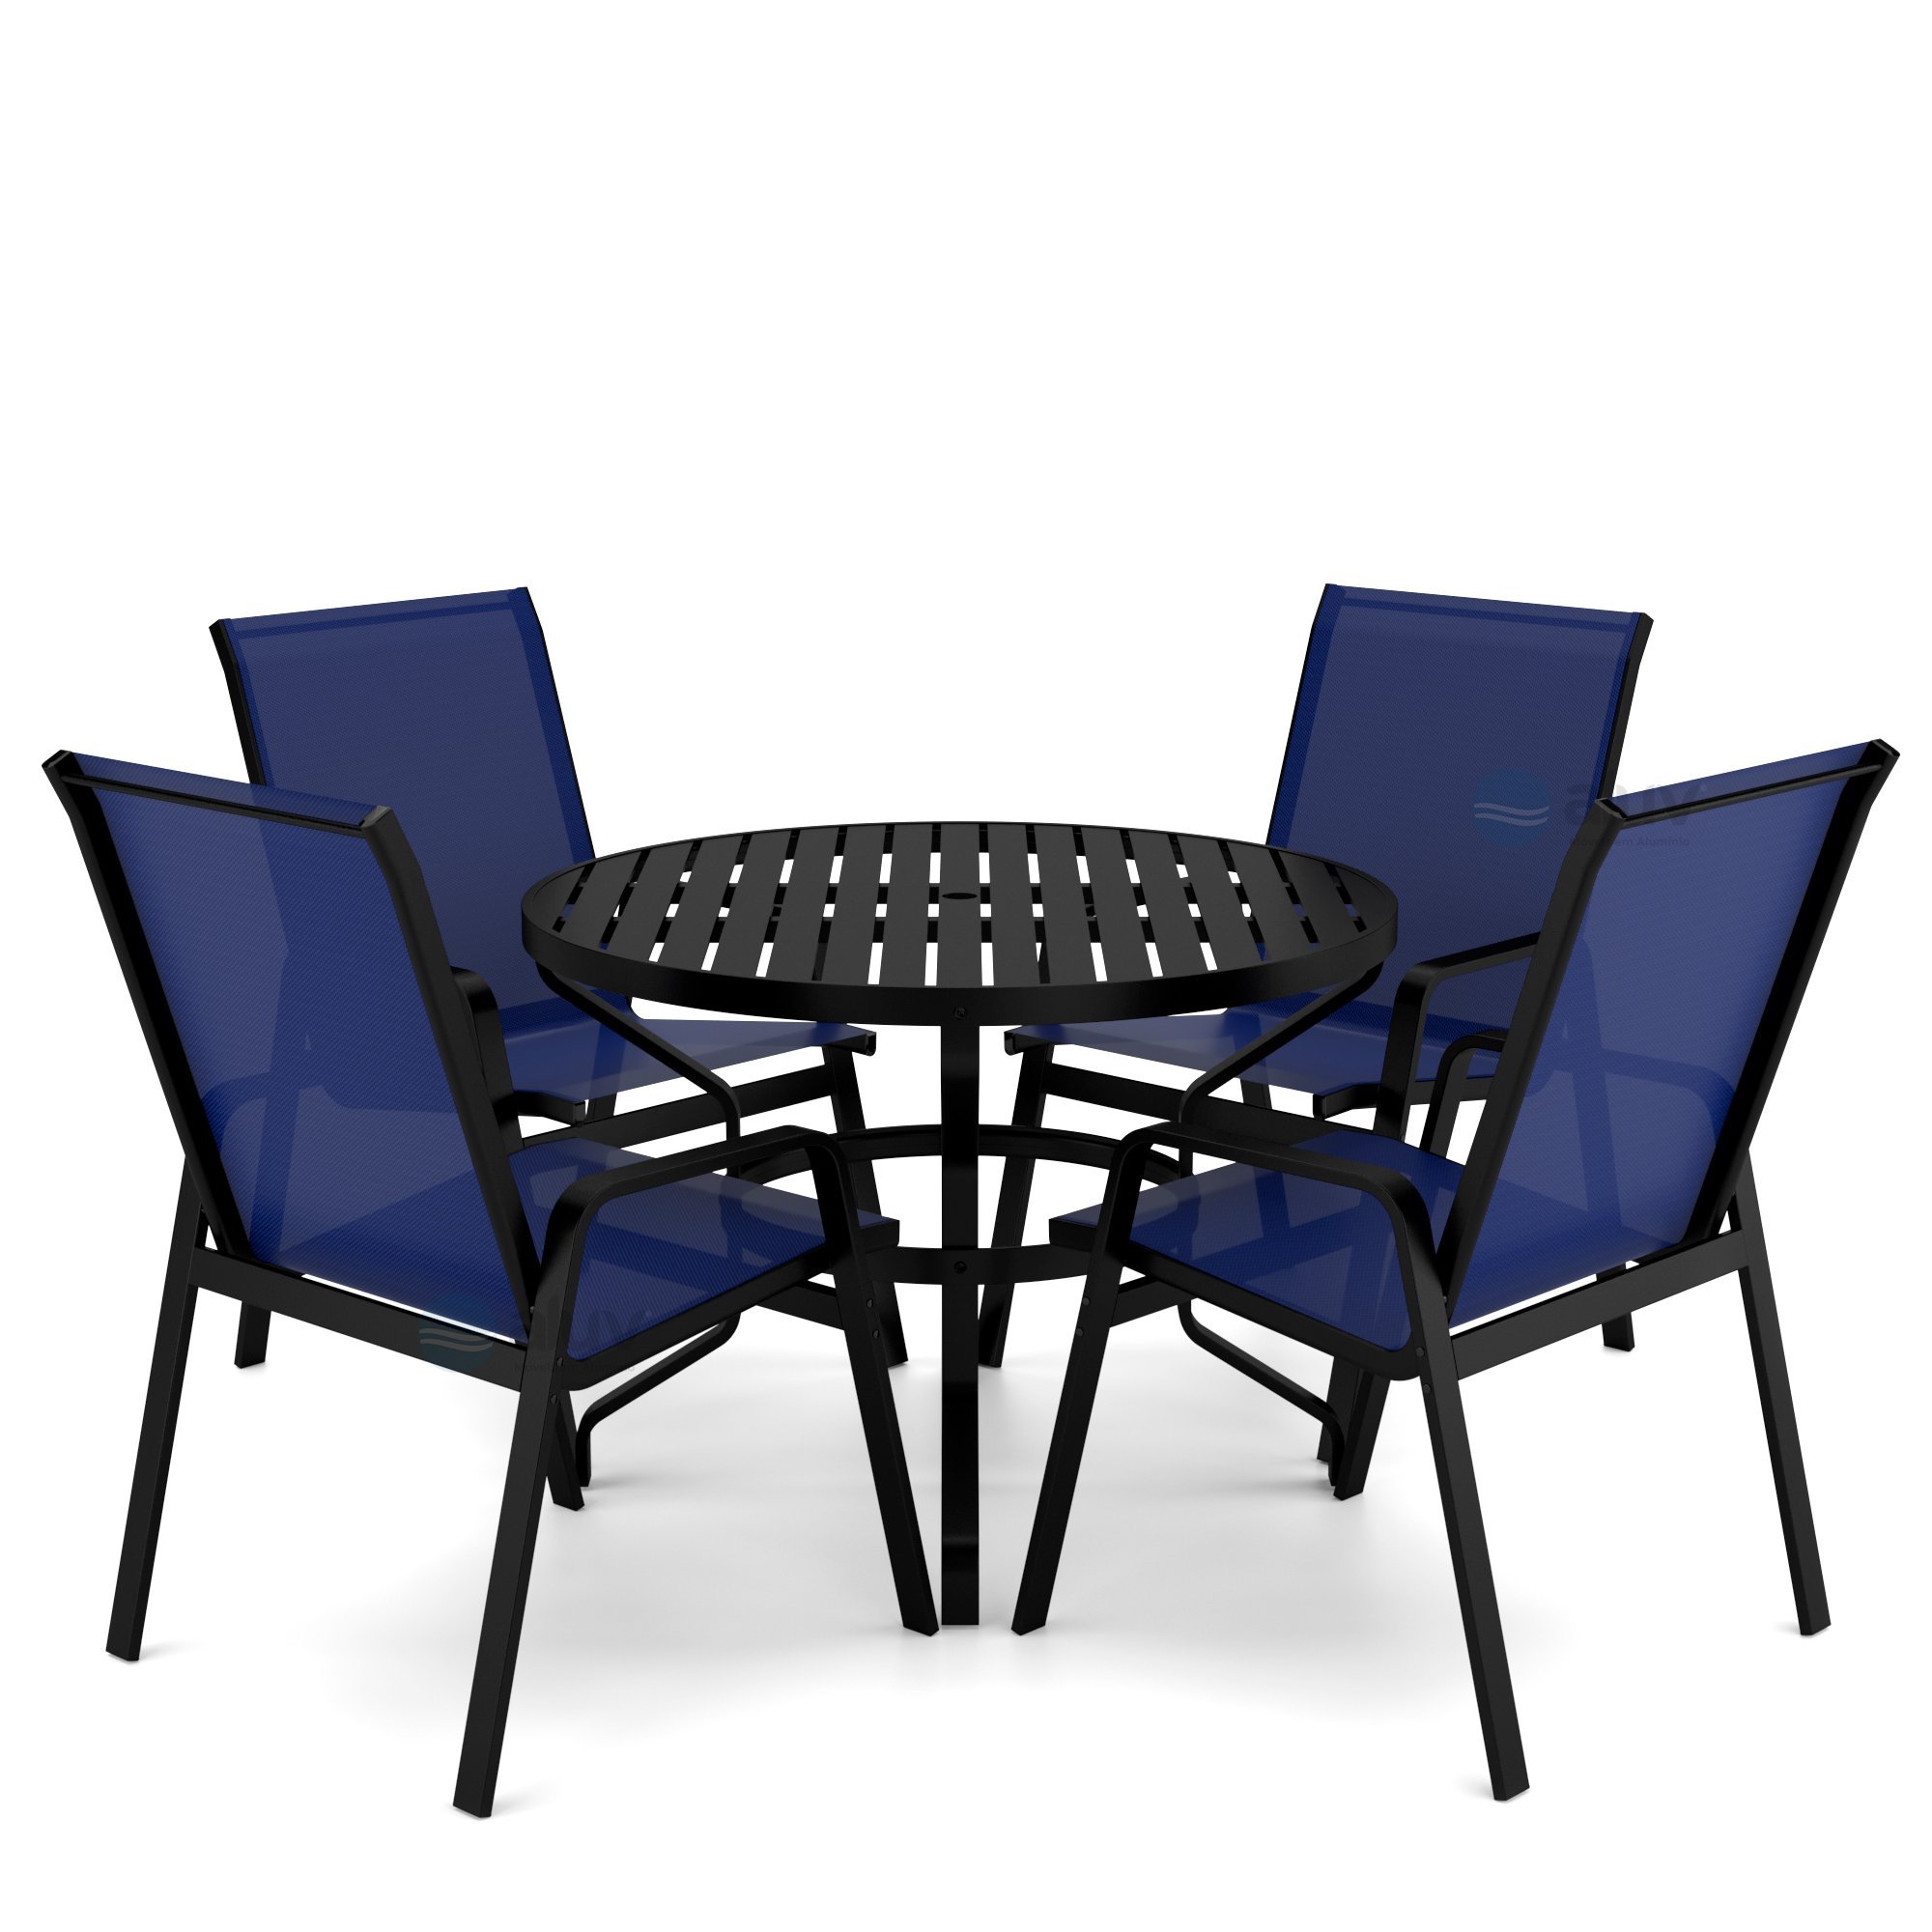 Mesa 4 cadeiras Ripado Piscina Alumínio Preto e Tela Azul